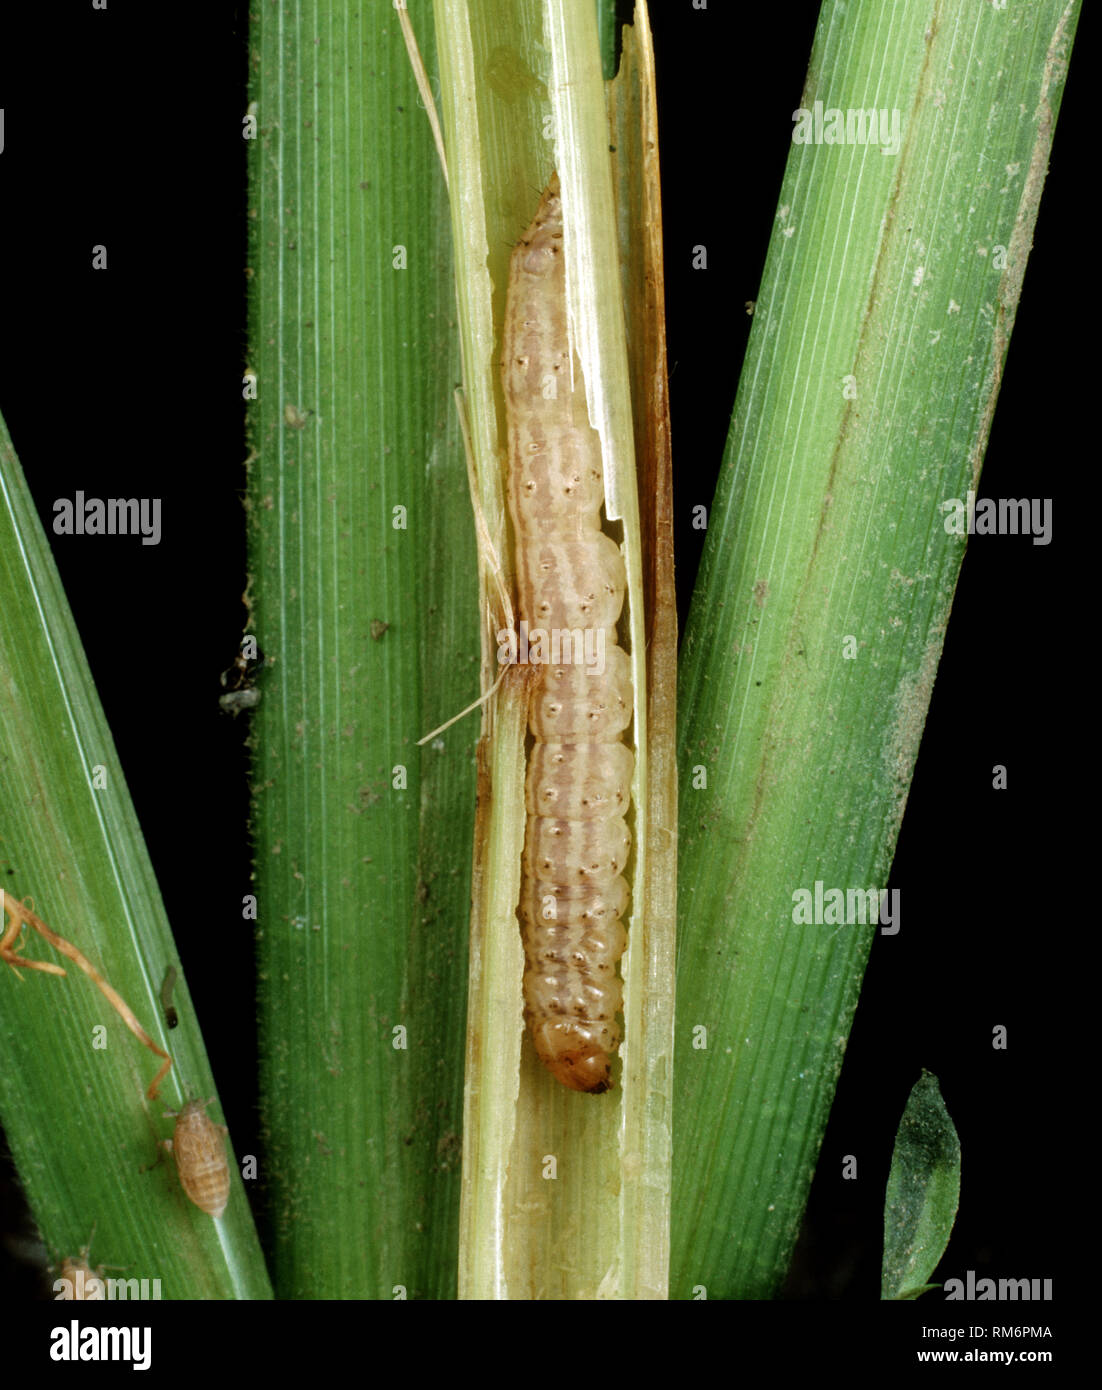 Asiatische Stammzellen borer oder gestreifte Reis Stammzellen Borer, Chilo suppressalis, Caterpillar Fütterung in einem beschädigten Reis Stengel, Luzon, Philippinen Stockfoto